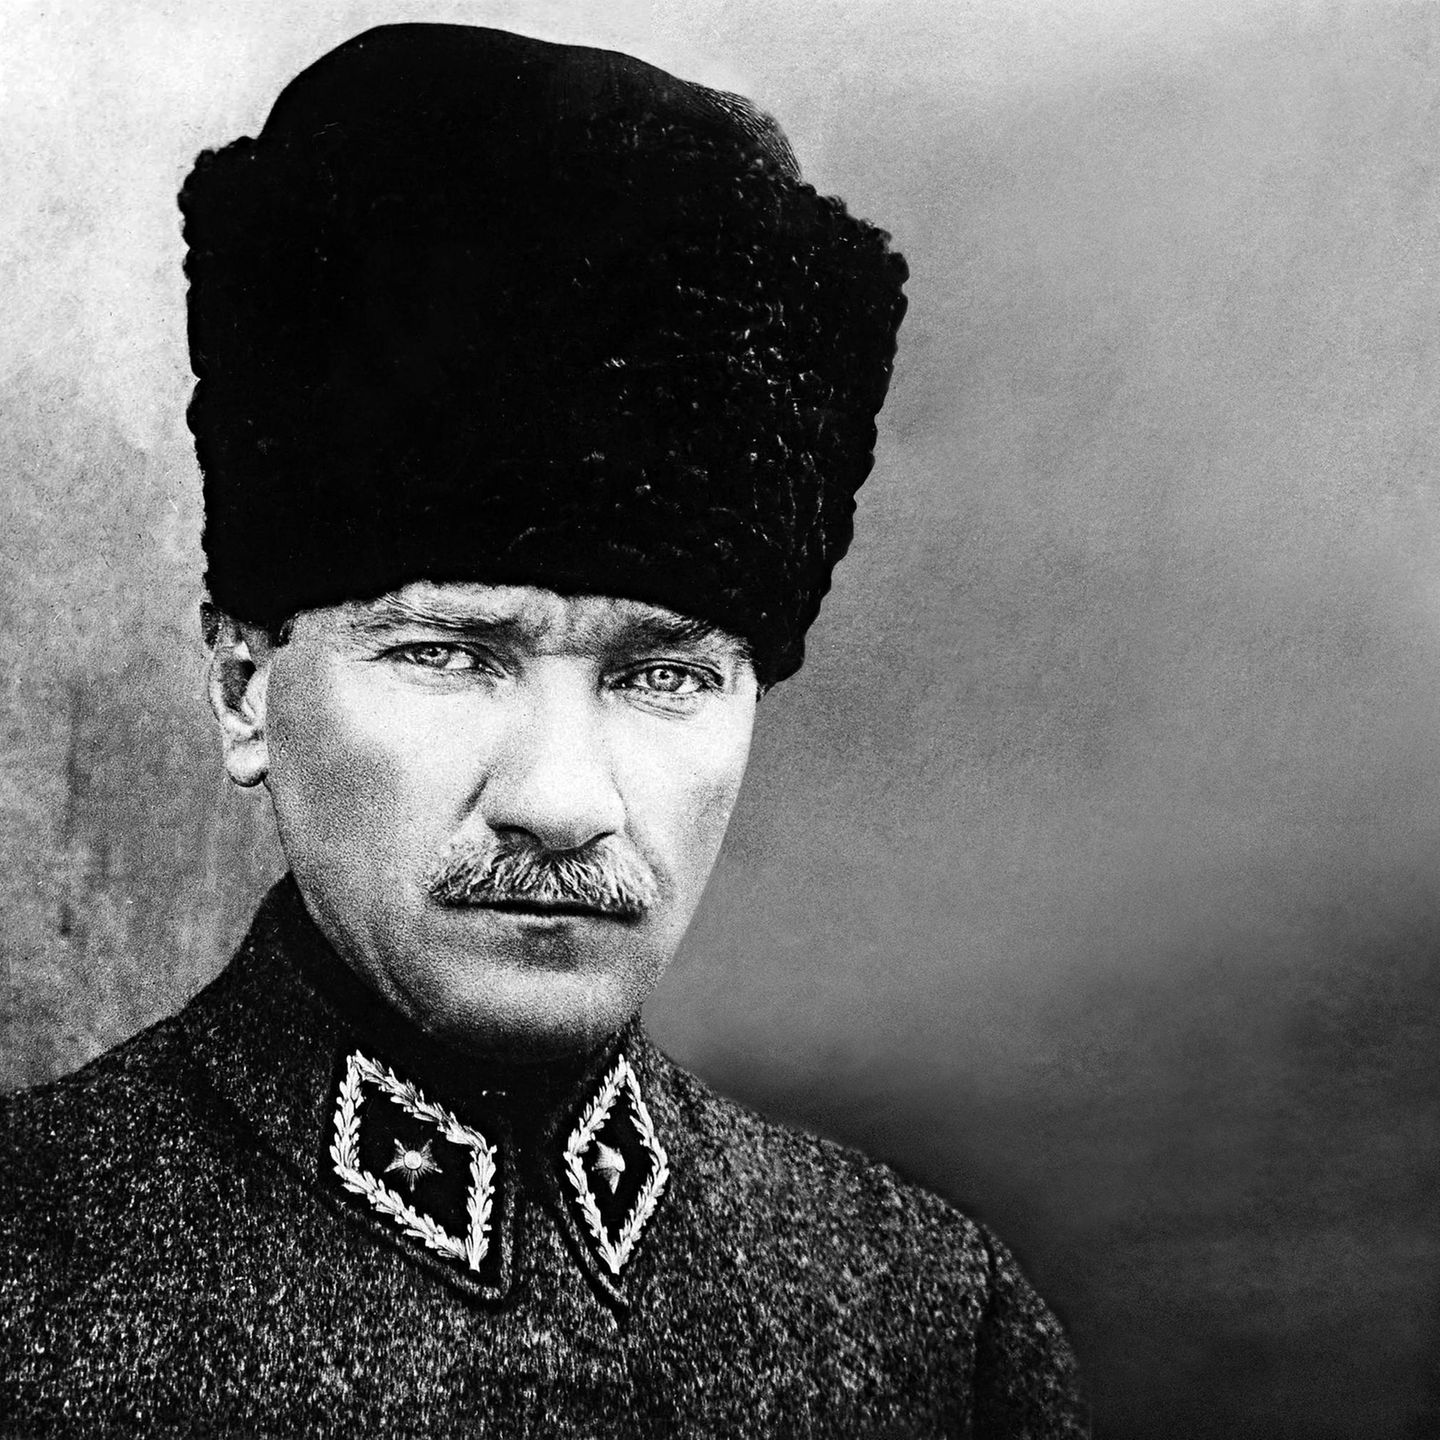 Mustafa Kemal kämpft nach dem Ersten Weltkrieg gegen den Sultan einerseits und die griechische Armee andererseits. Sein Sieg über die Invasoren erzwingt einen neuen Friedensvertrag – auf diesen Erfolg wird Kemal seine Einparteienherrschaft gründen